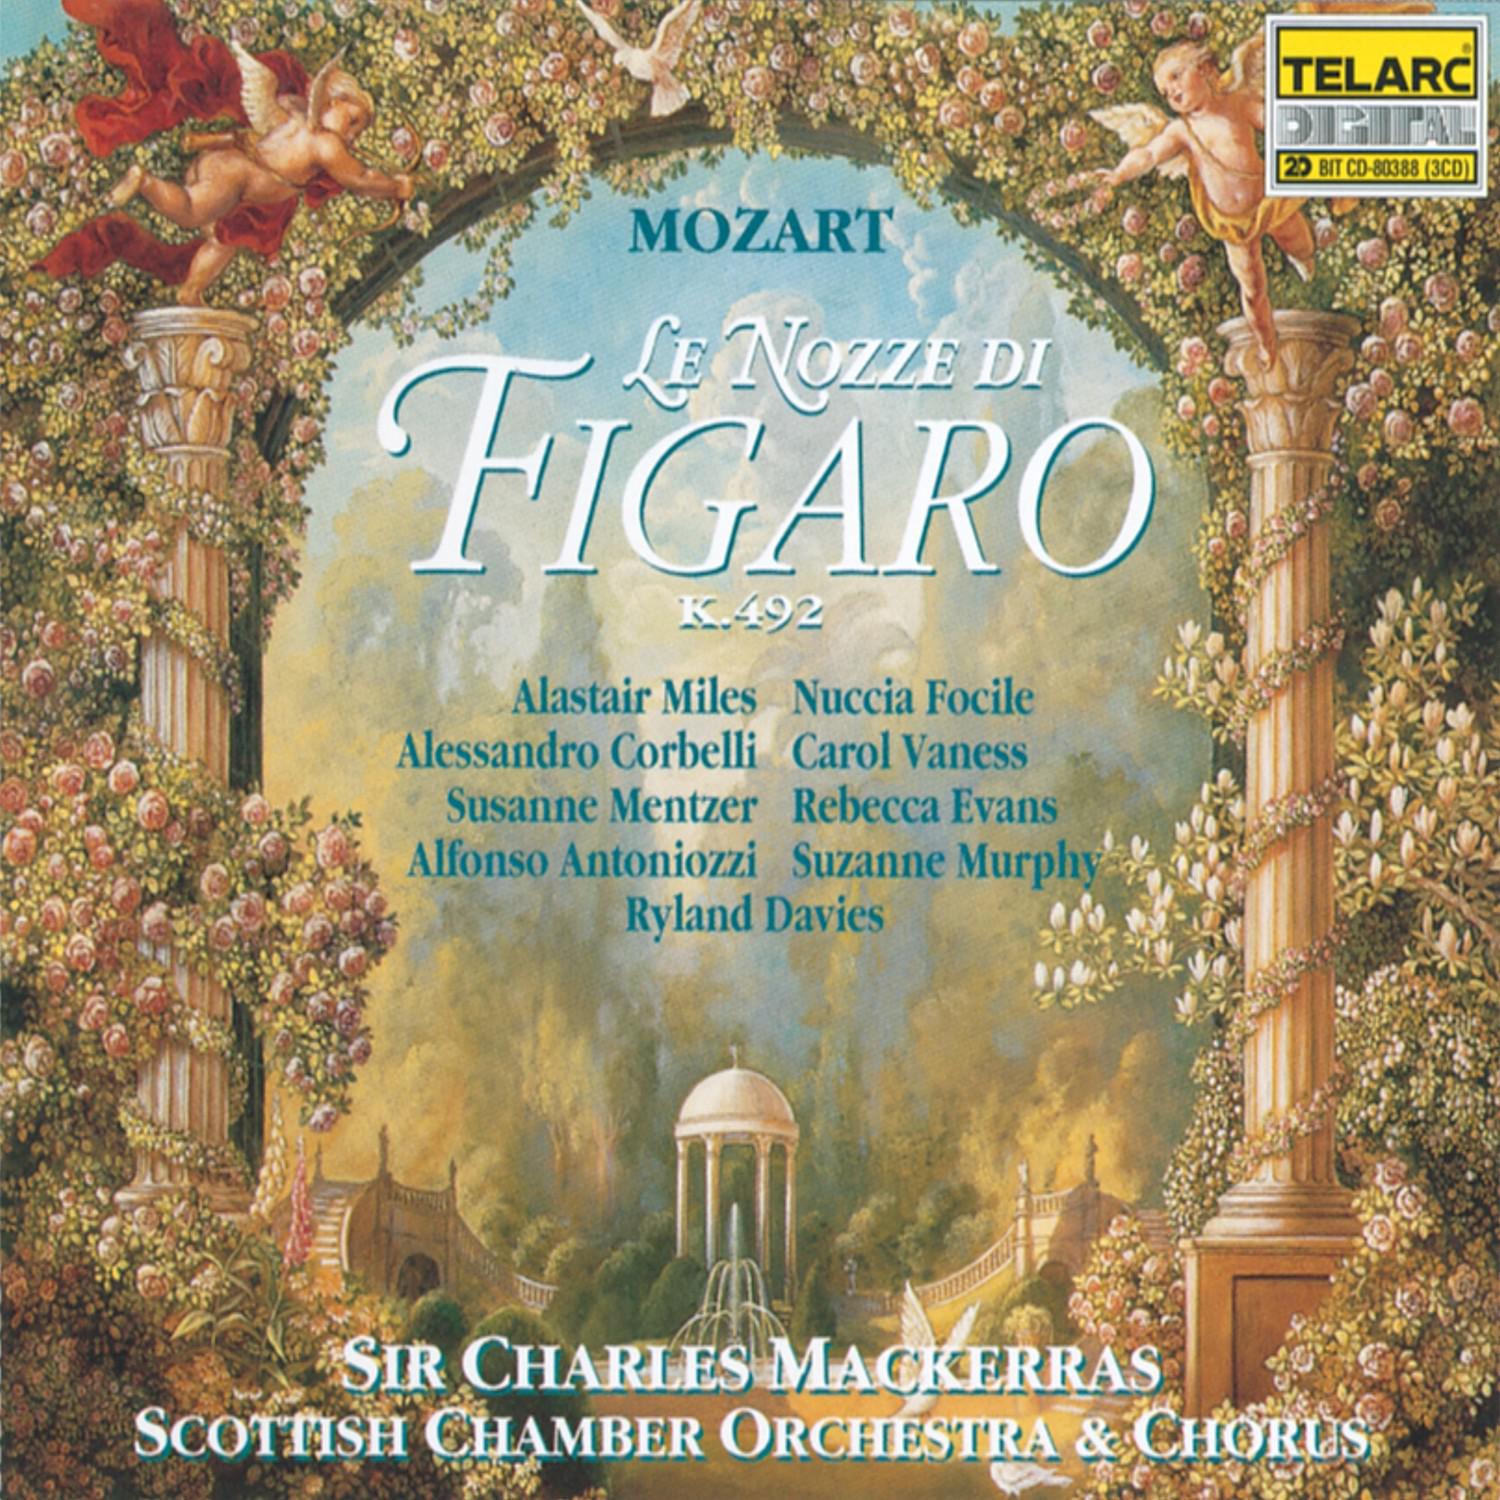 Marriage of Figaro: Recitativo: "Ah, son perduto!"